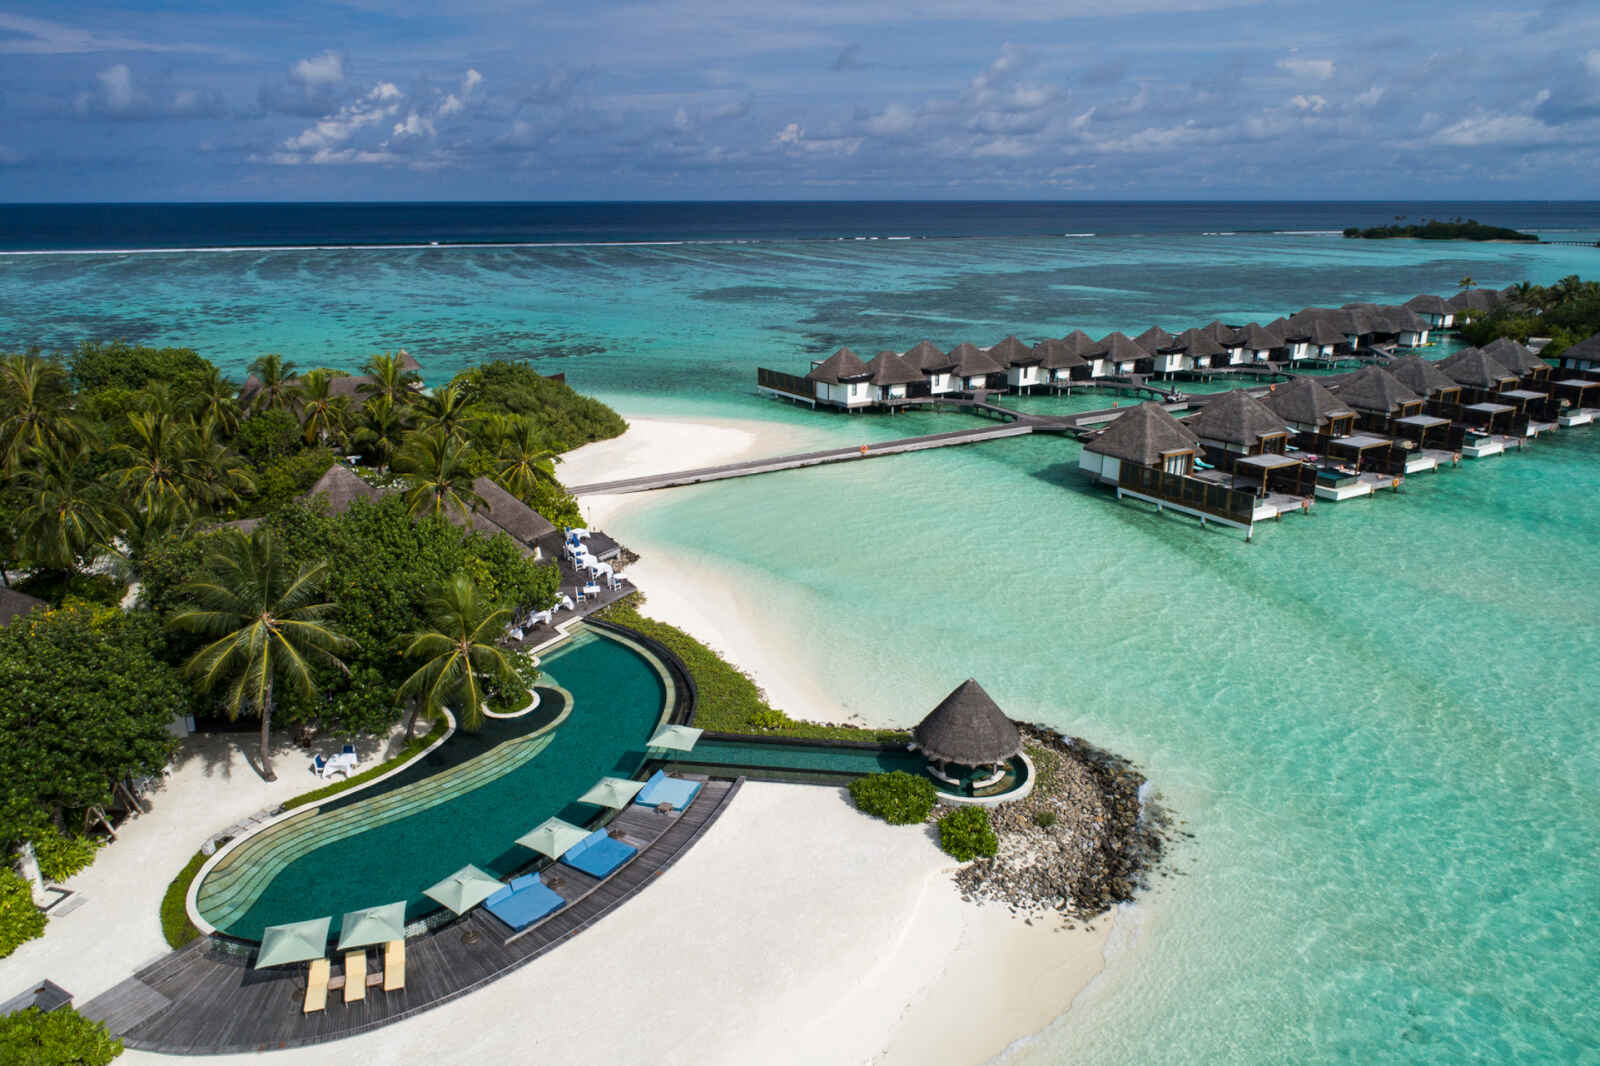 Maldives : Four Seasons Resort Maldives at Kuda Huraa